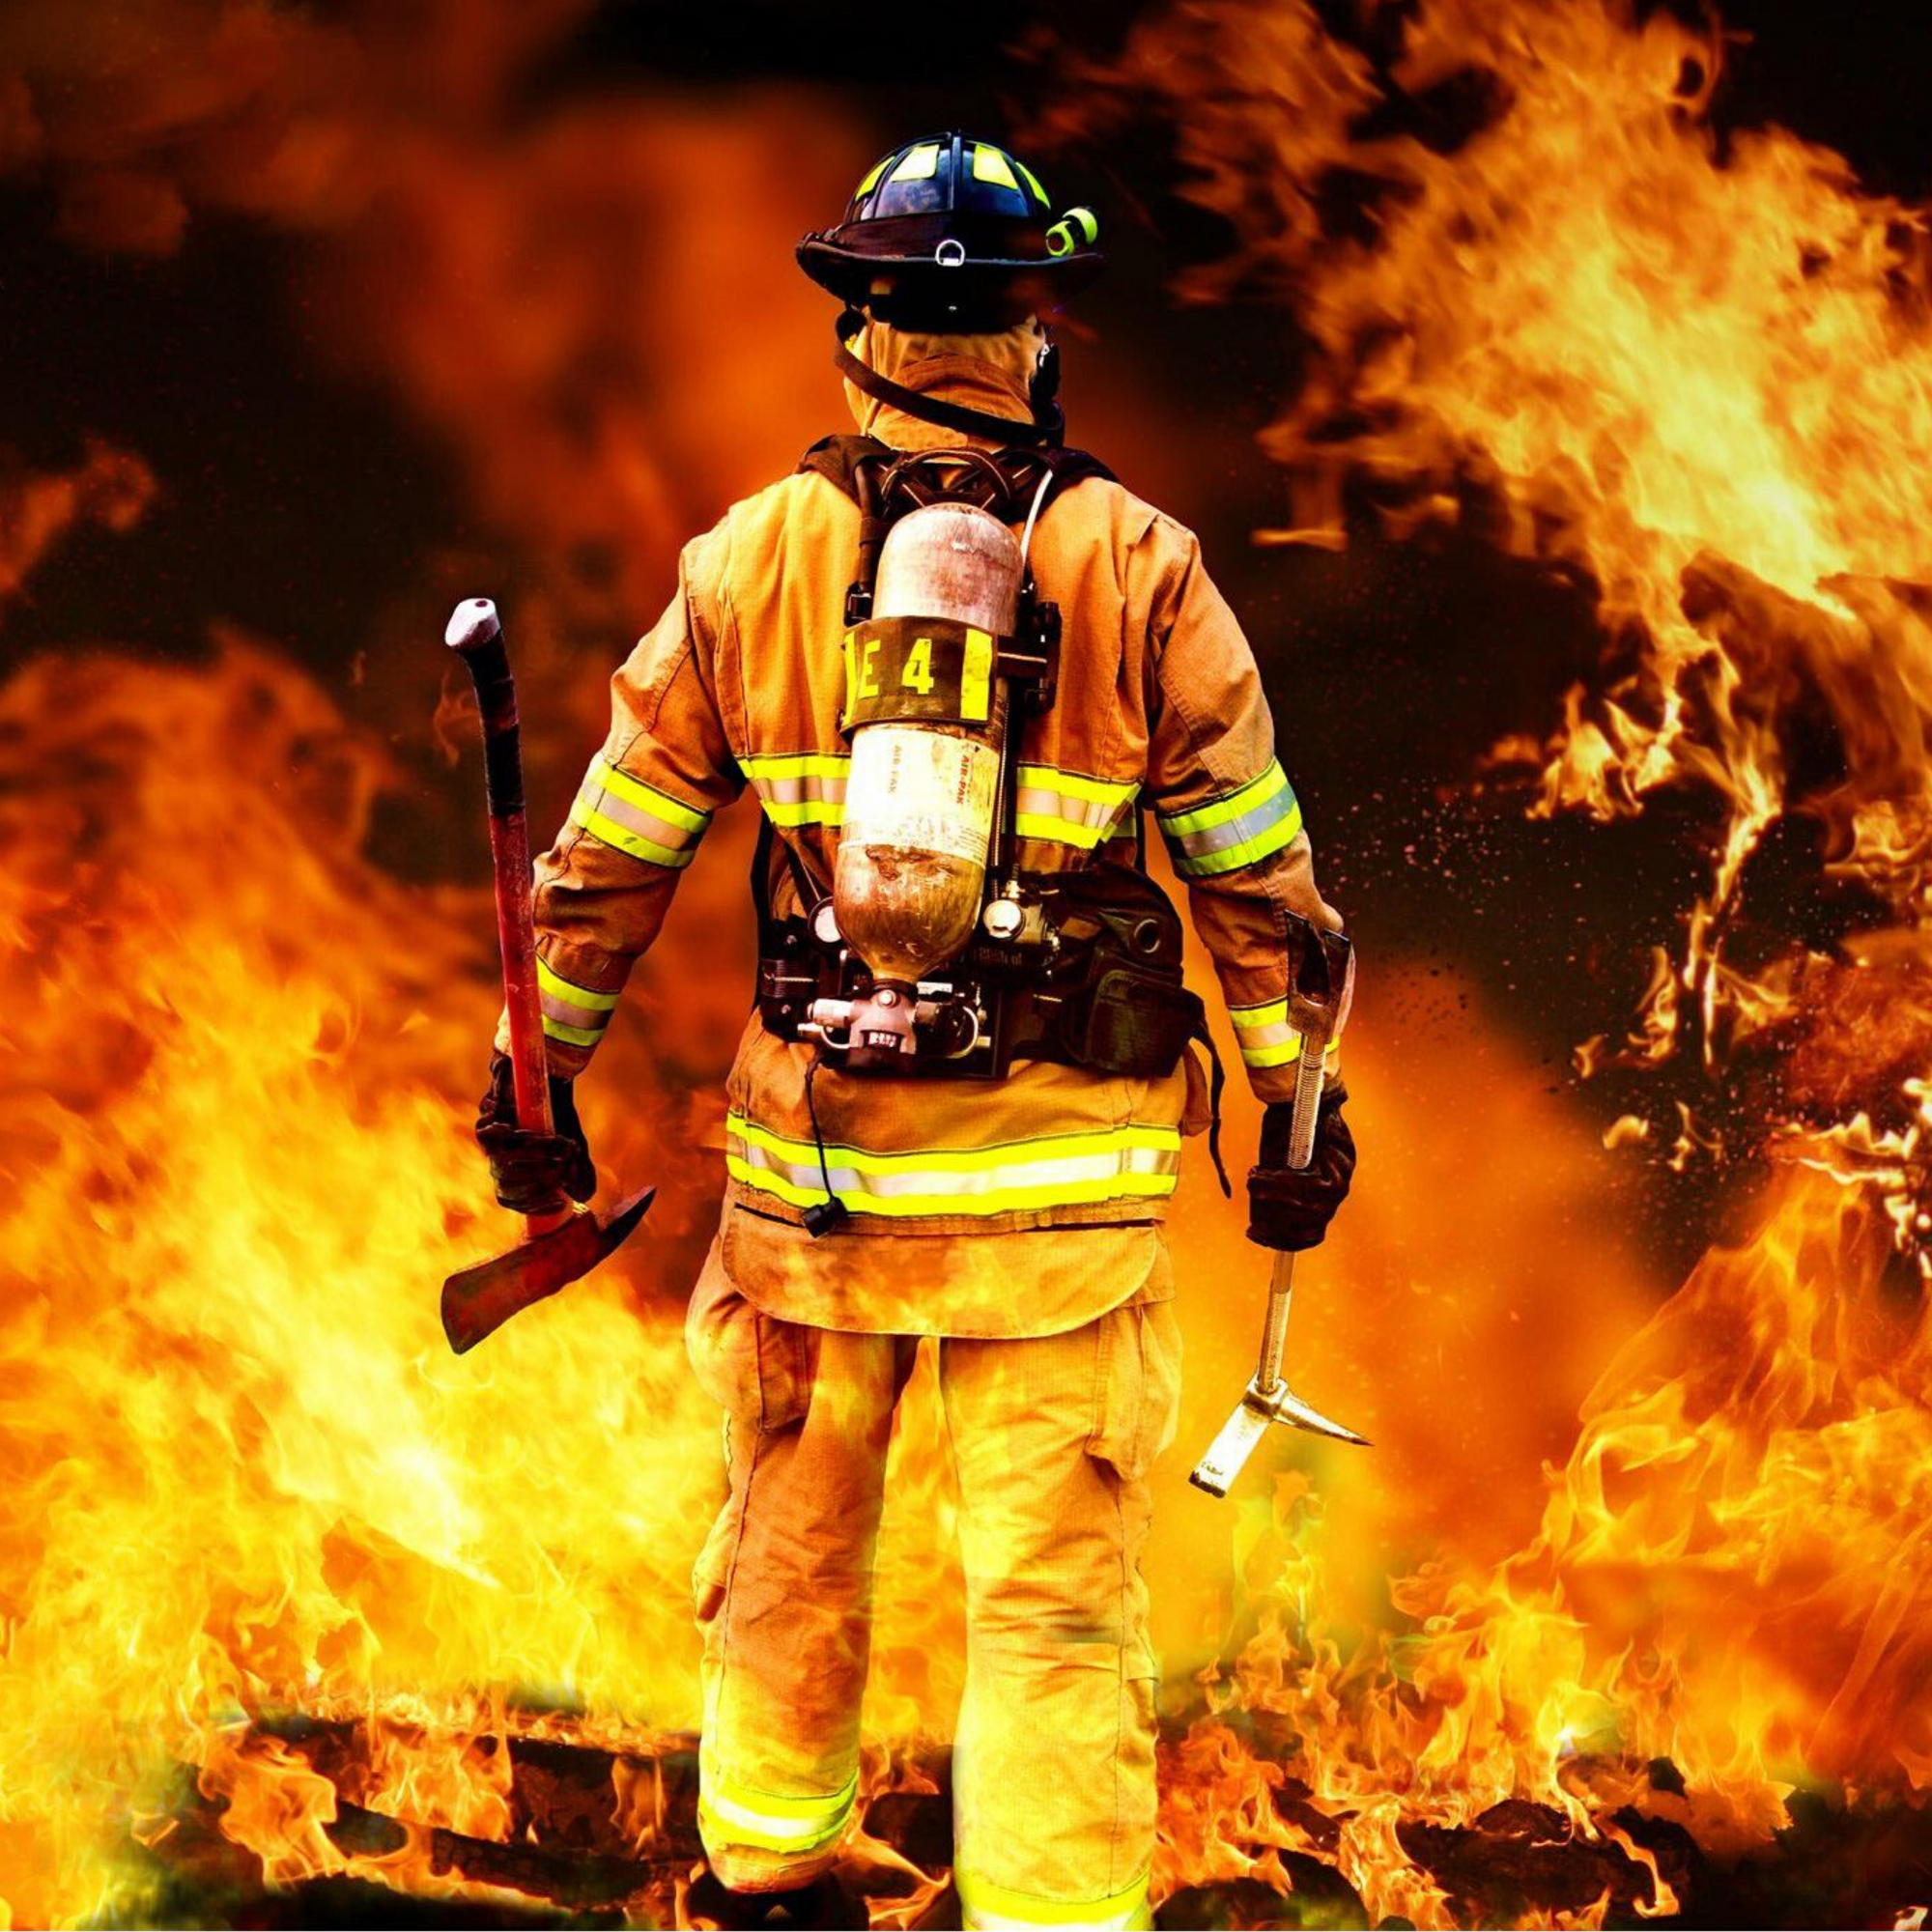 Fireman facing fire